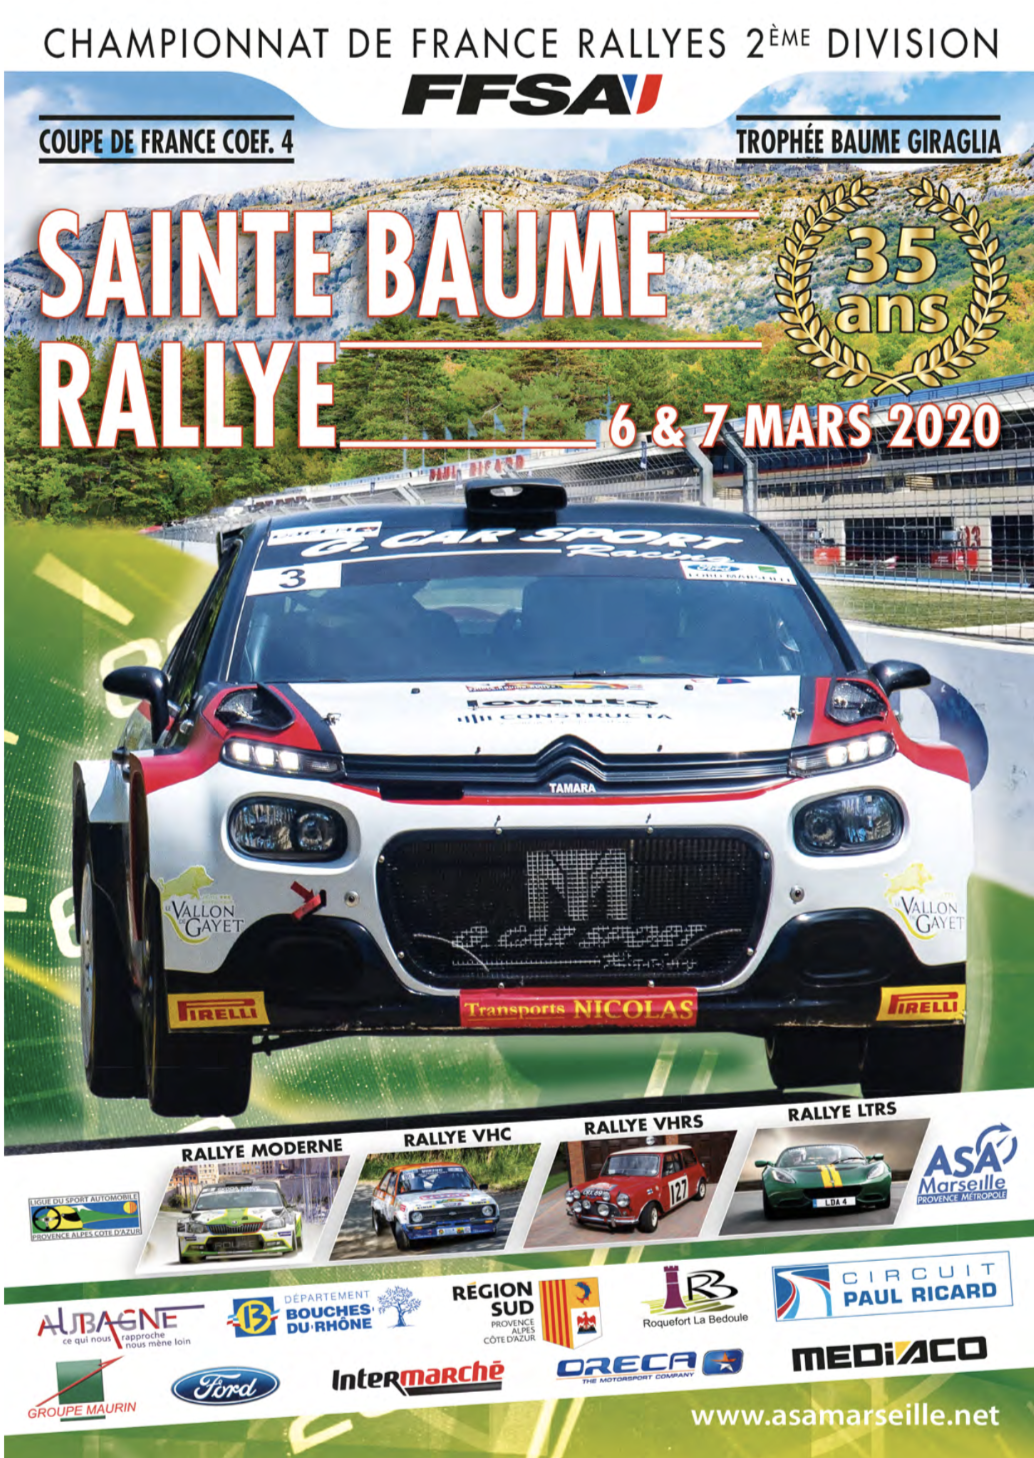 35e RALLYE SAINTE BAUME. Le rallye de la Sainte-Baume 2020 s'est ...